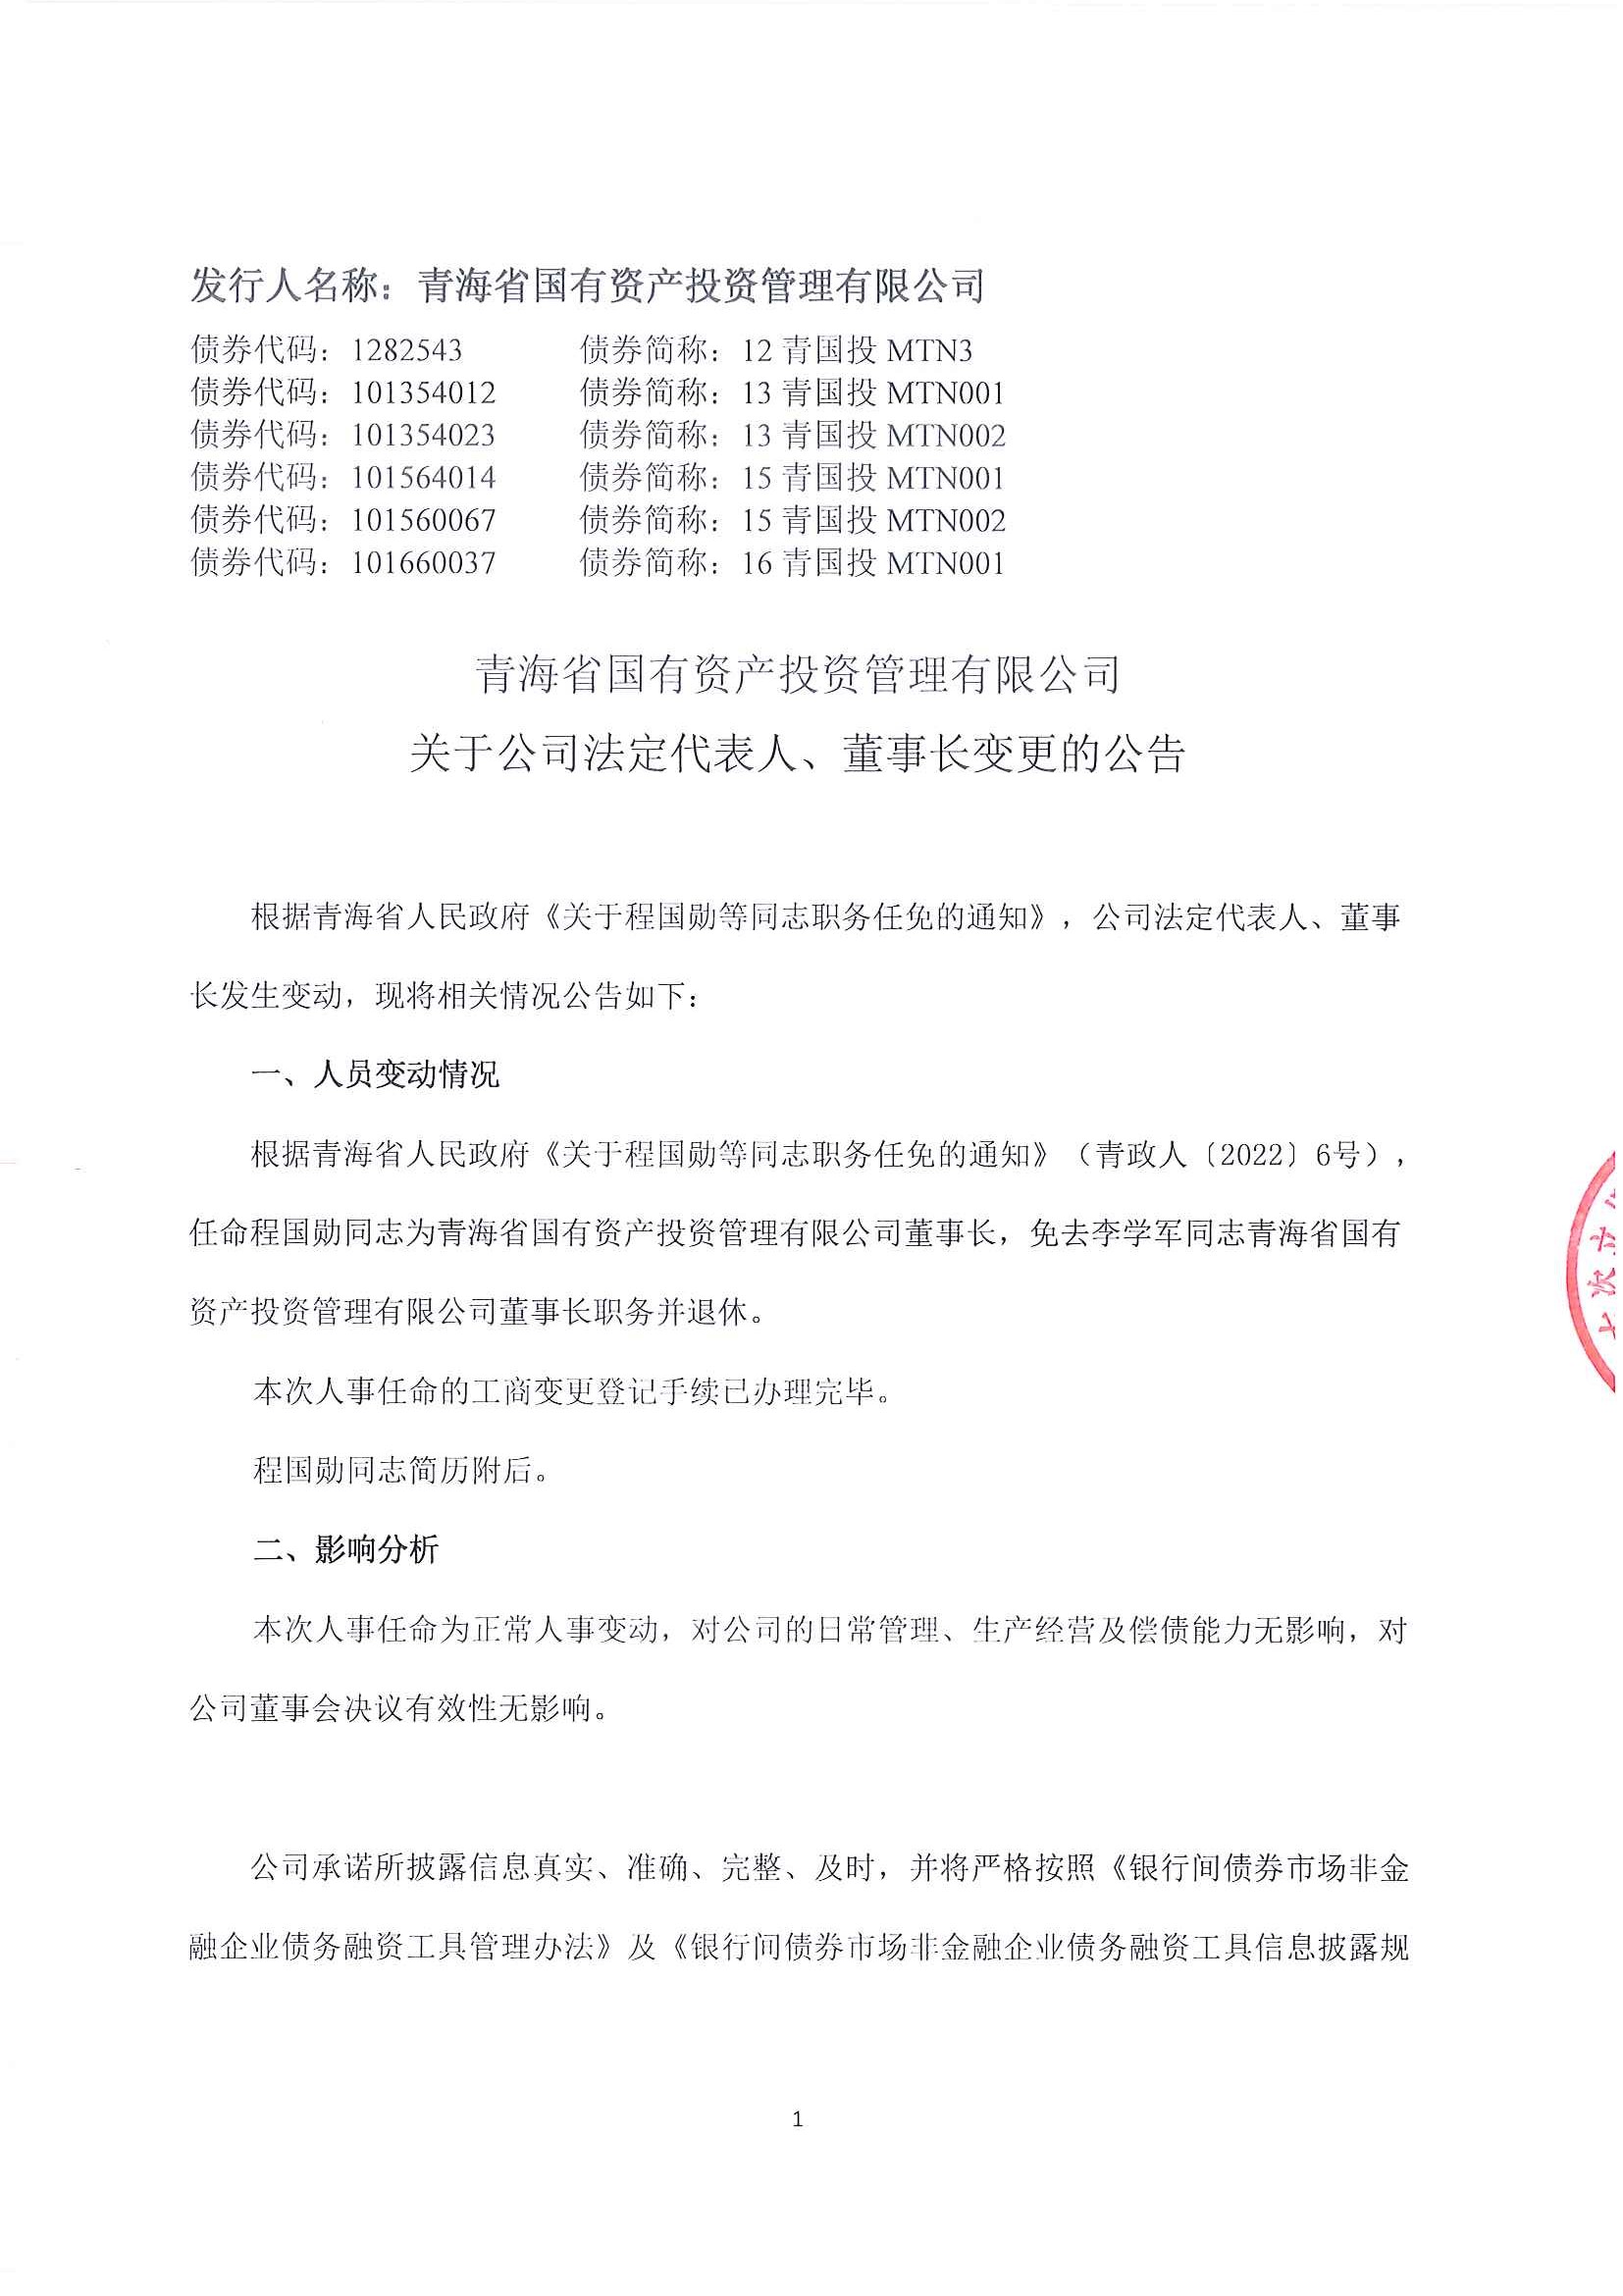 九州官方网站（中国）股份有限公司关于公司法定代表人、董事长变更的公告